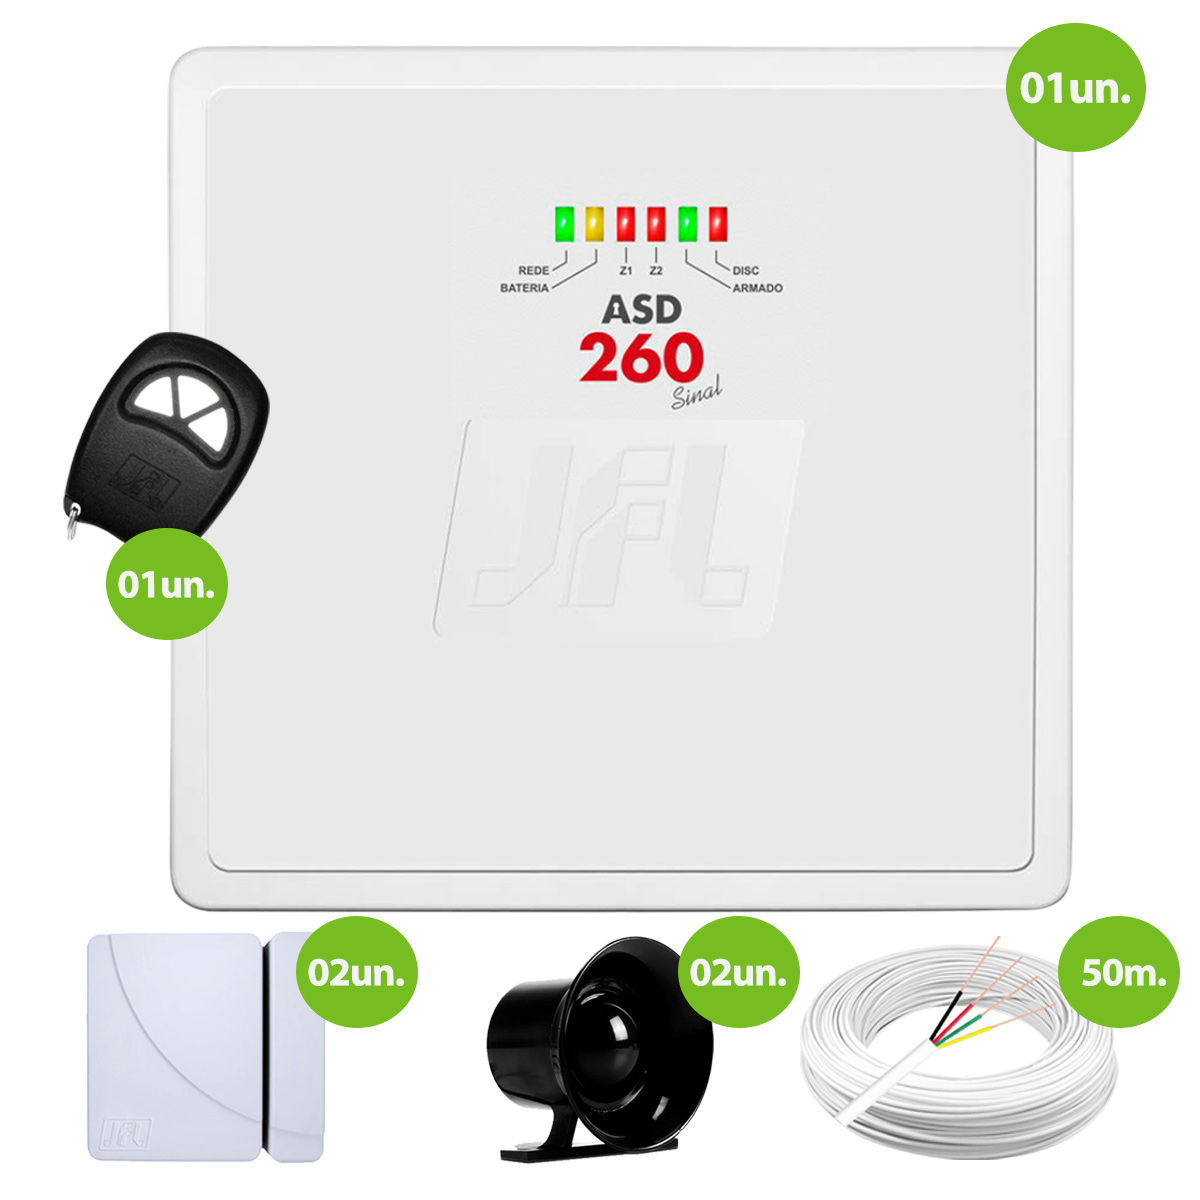 kit-central-de-alarme-residencial-com-discadora-asd-260-jfl-controle-tx4-bateria01